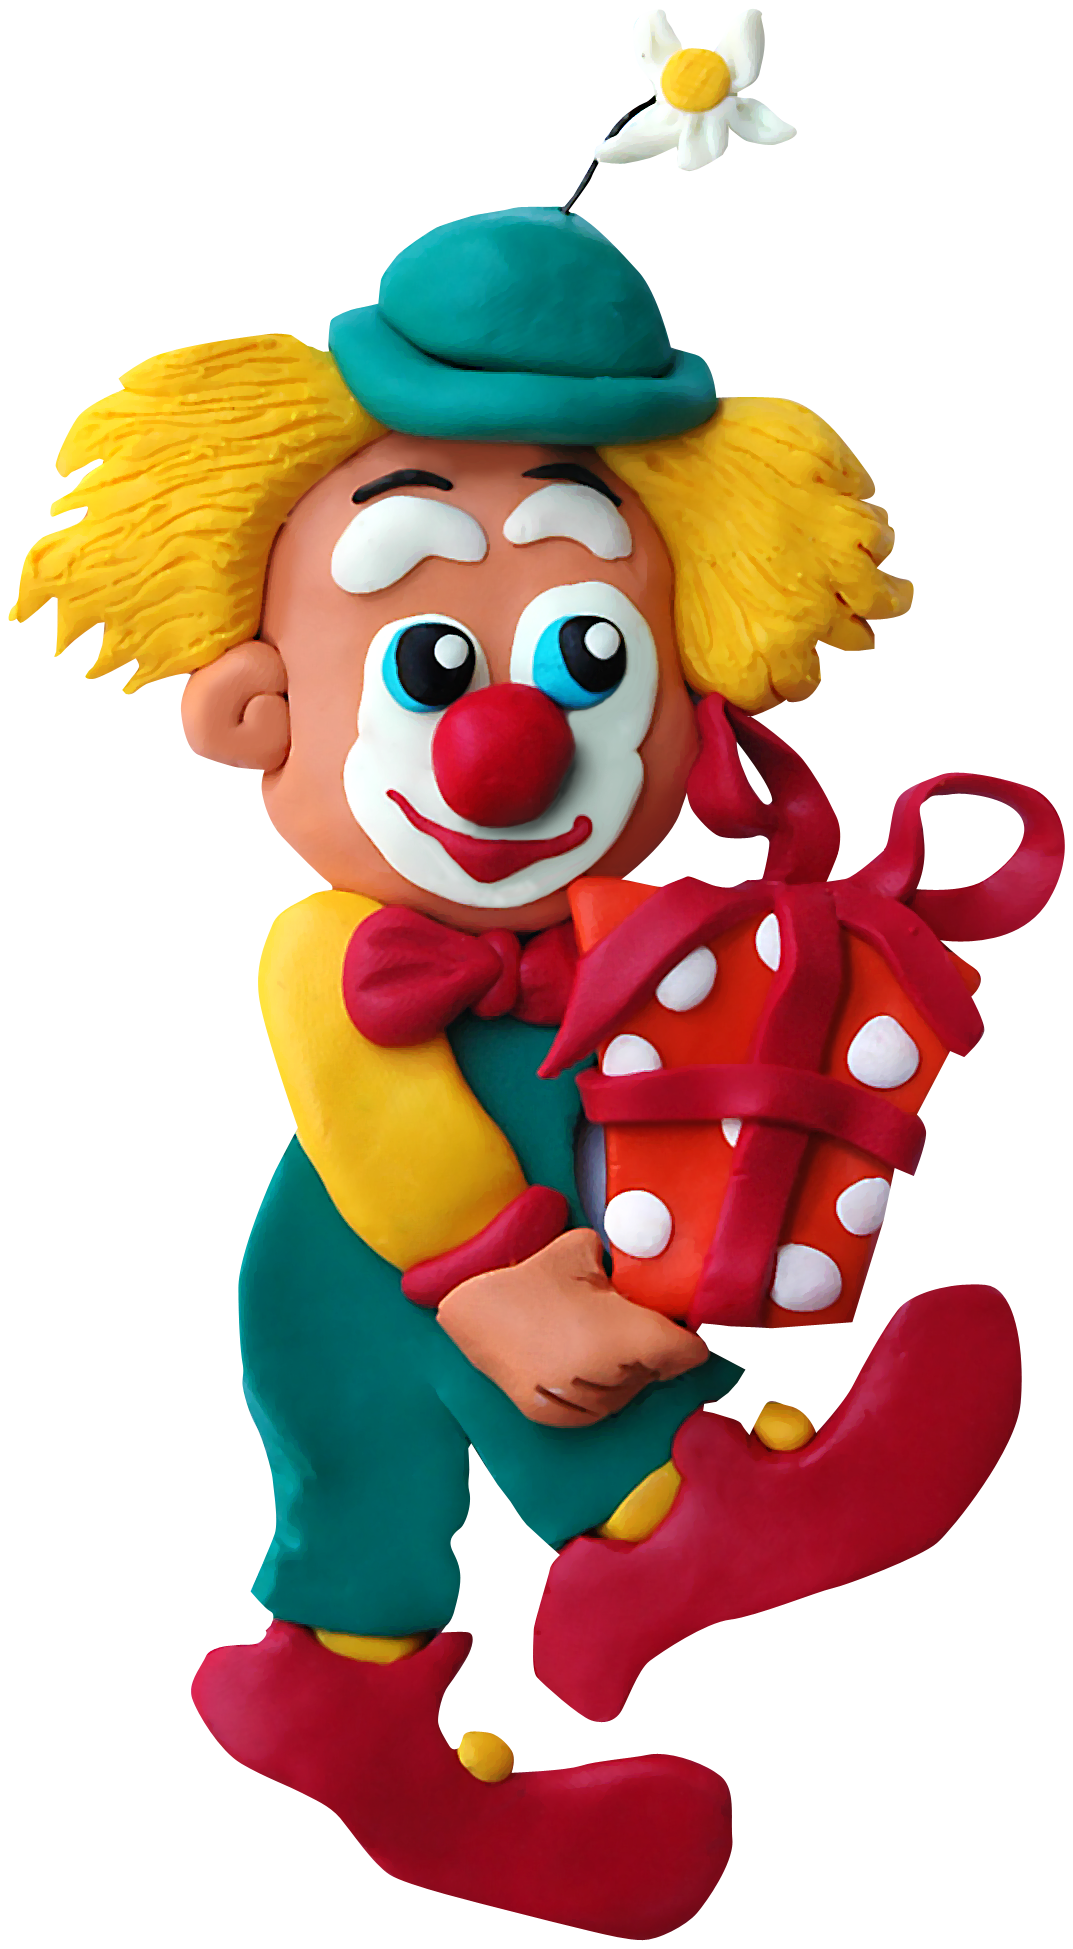 Получить бесплатный пин клоуна. Клоун. Клоуны для детей. Клоун на прозрачном фоне. Клоун из мультика.